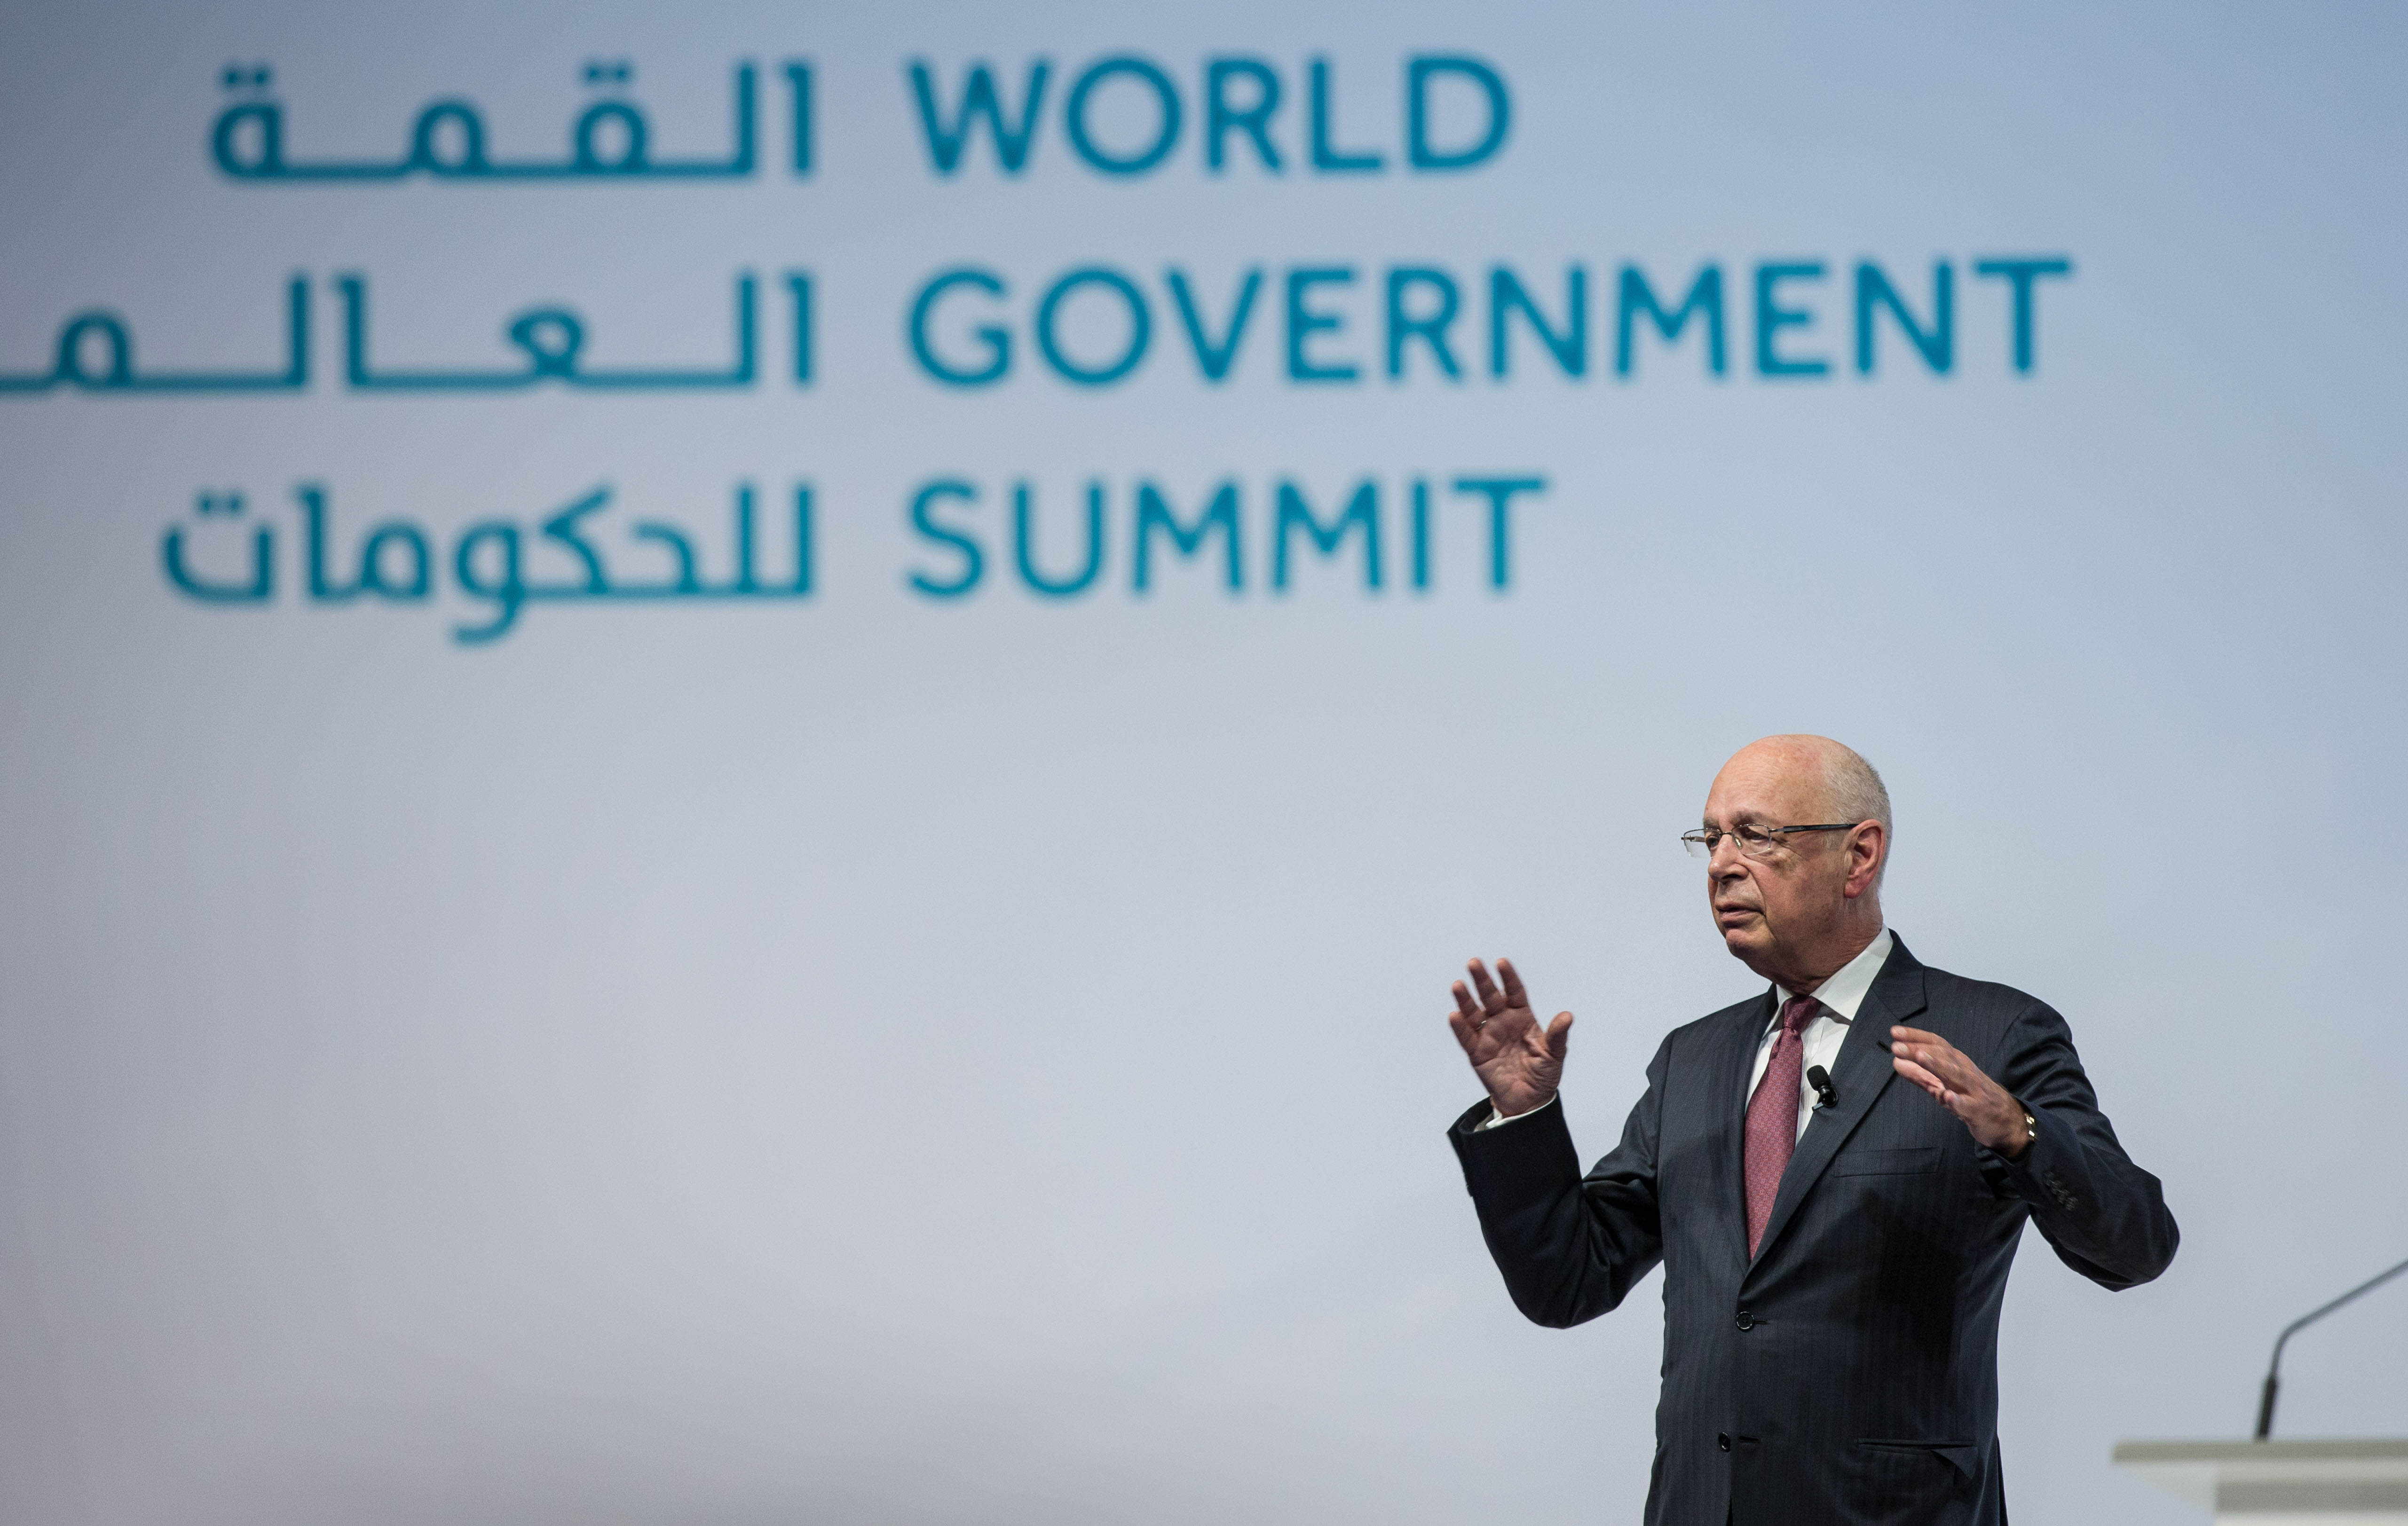 القمة العالمية للحكومات 2017: على الحكومات أن تعمل سويًا لمواجهة التحديات العالمية